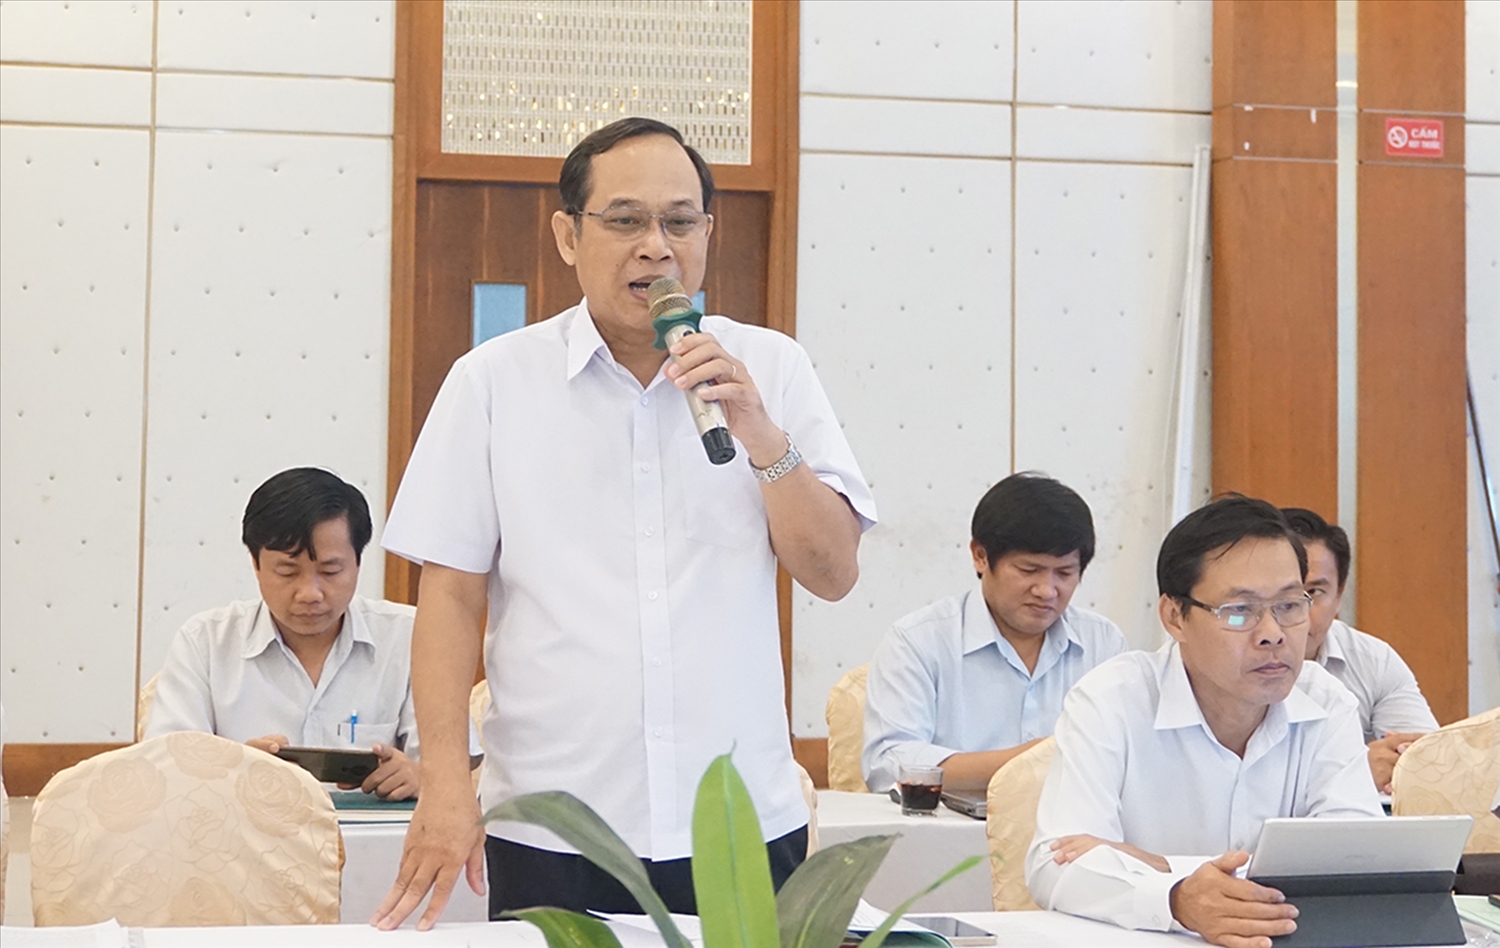 Ông Lâm Sách - Trưởng ban Dân tộc tỉnh Sóc Trăng đại diện cho Đoàn đại biểu tỉnh Sóc Trăng phát biểu tại Hội thảo